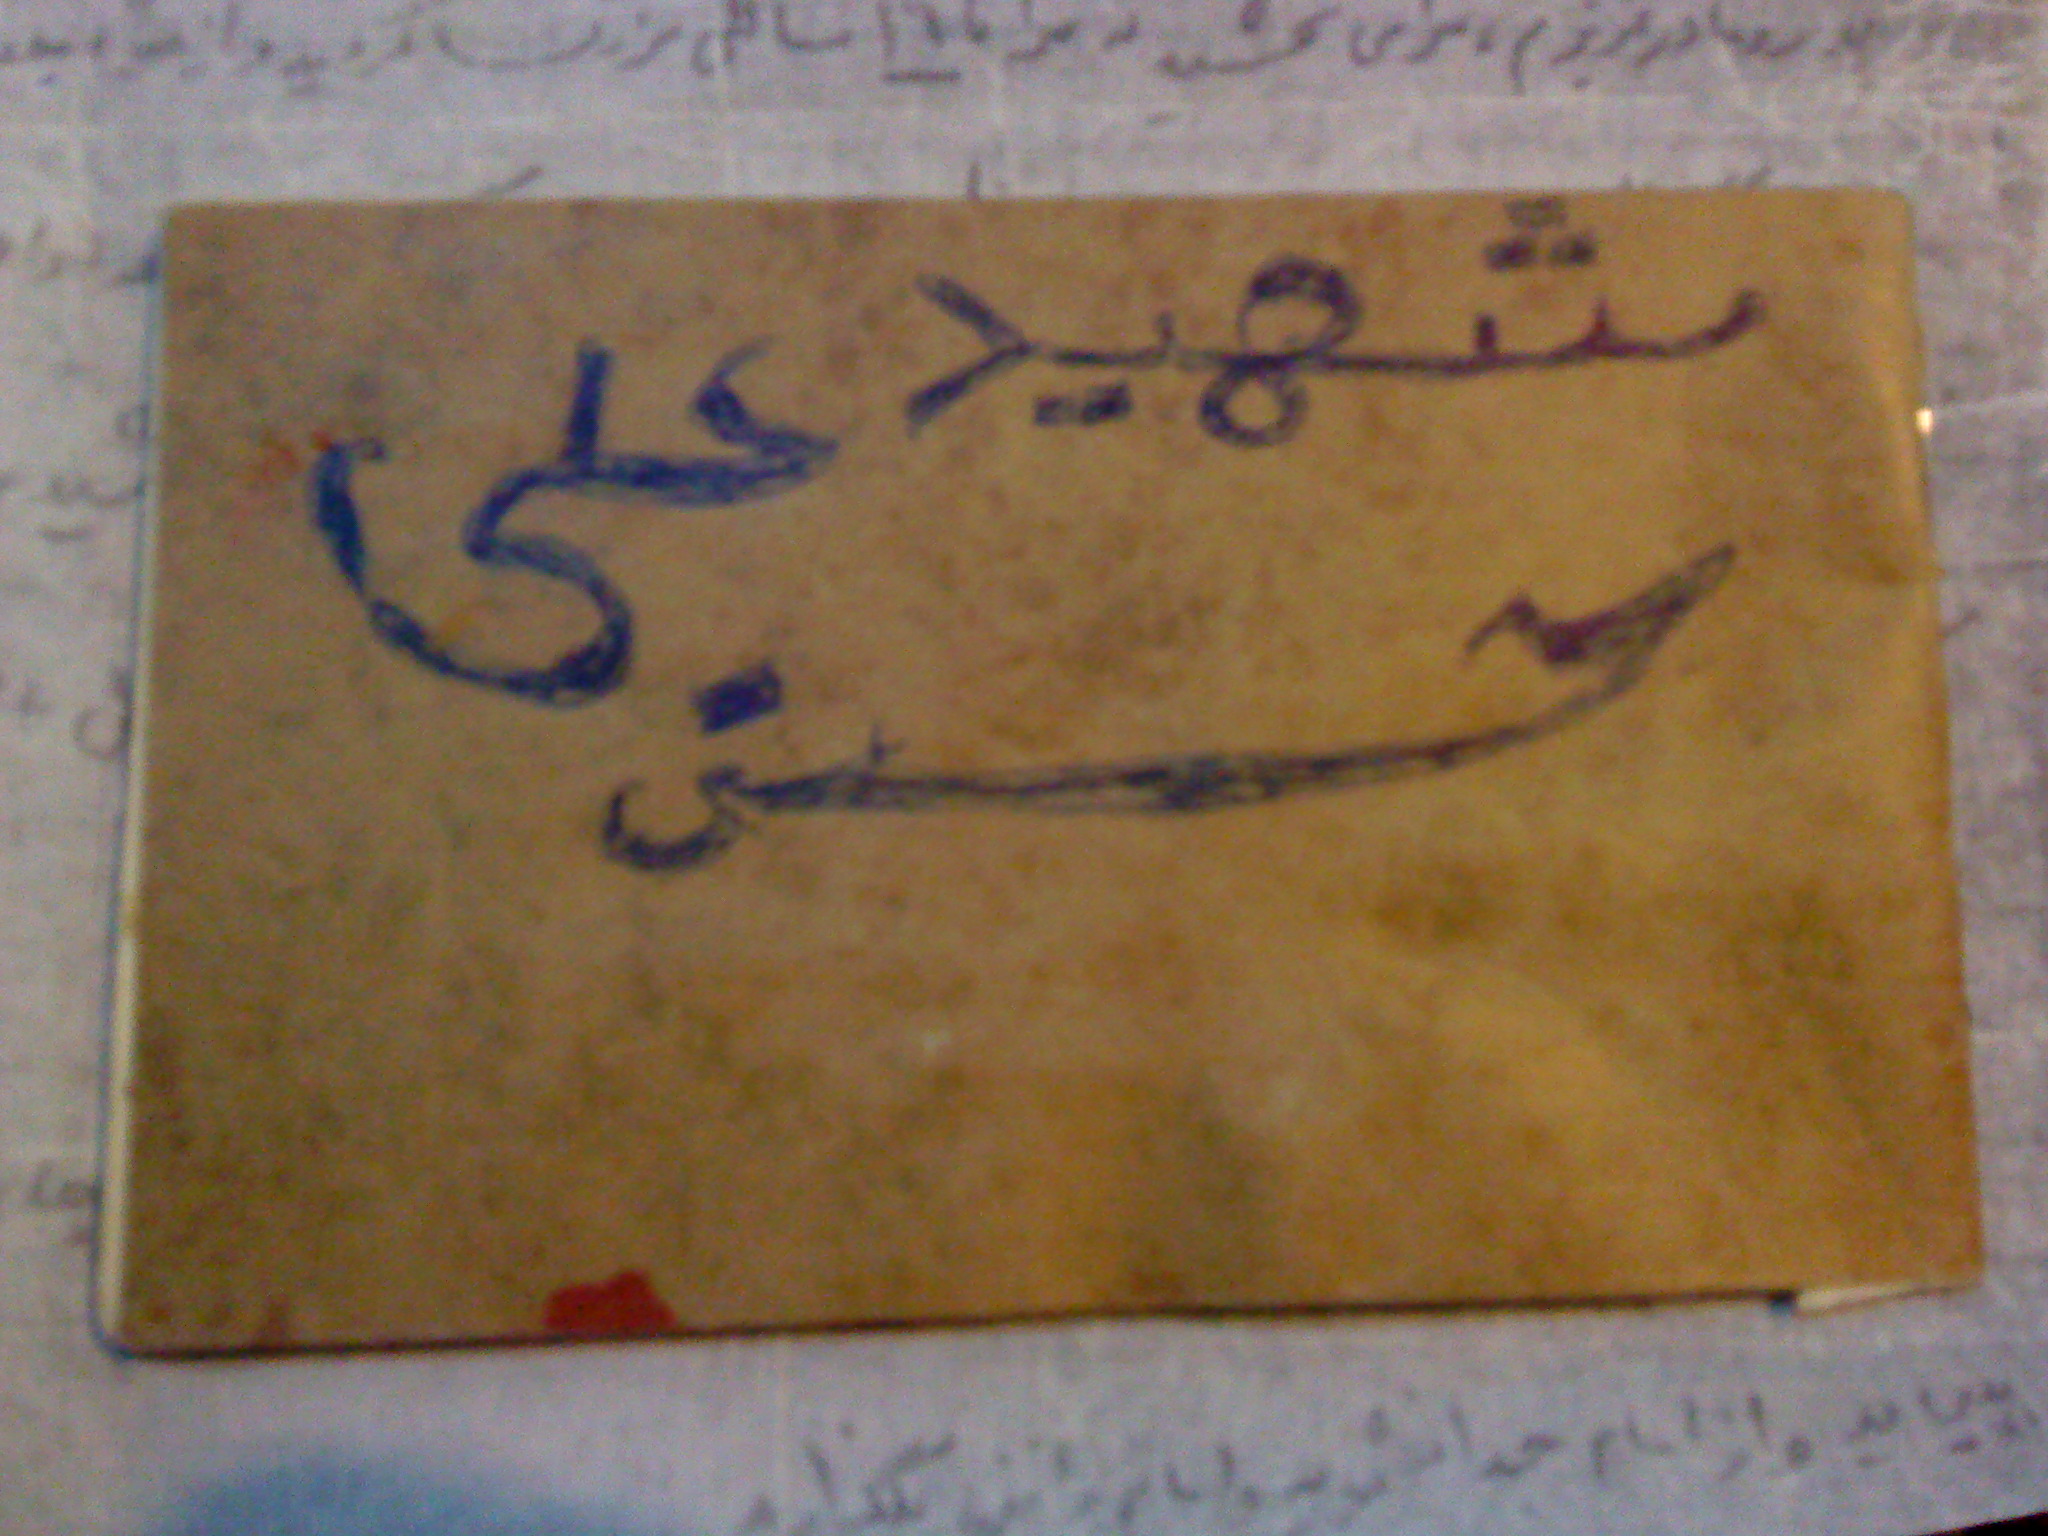 دست خط شهید که نام خود را روی دفترچه ی شخصی اش نوشته بود...